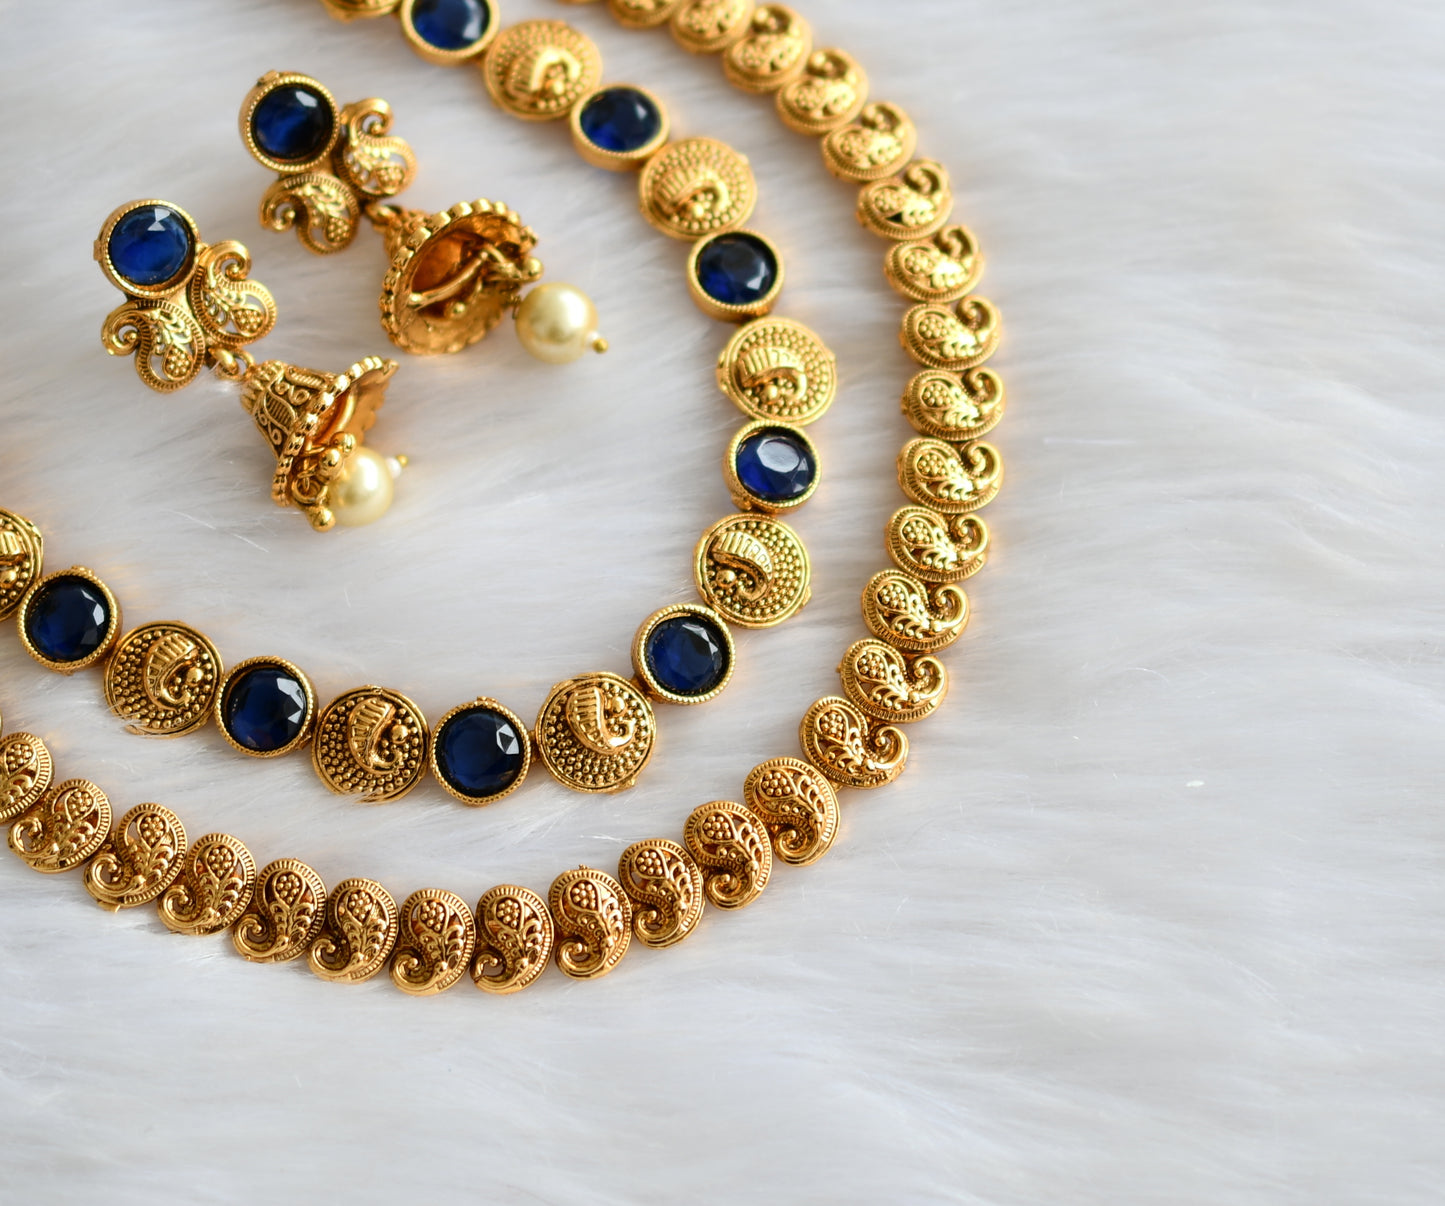 Antique gold tone blue mango double layer necklace set dj-39689